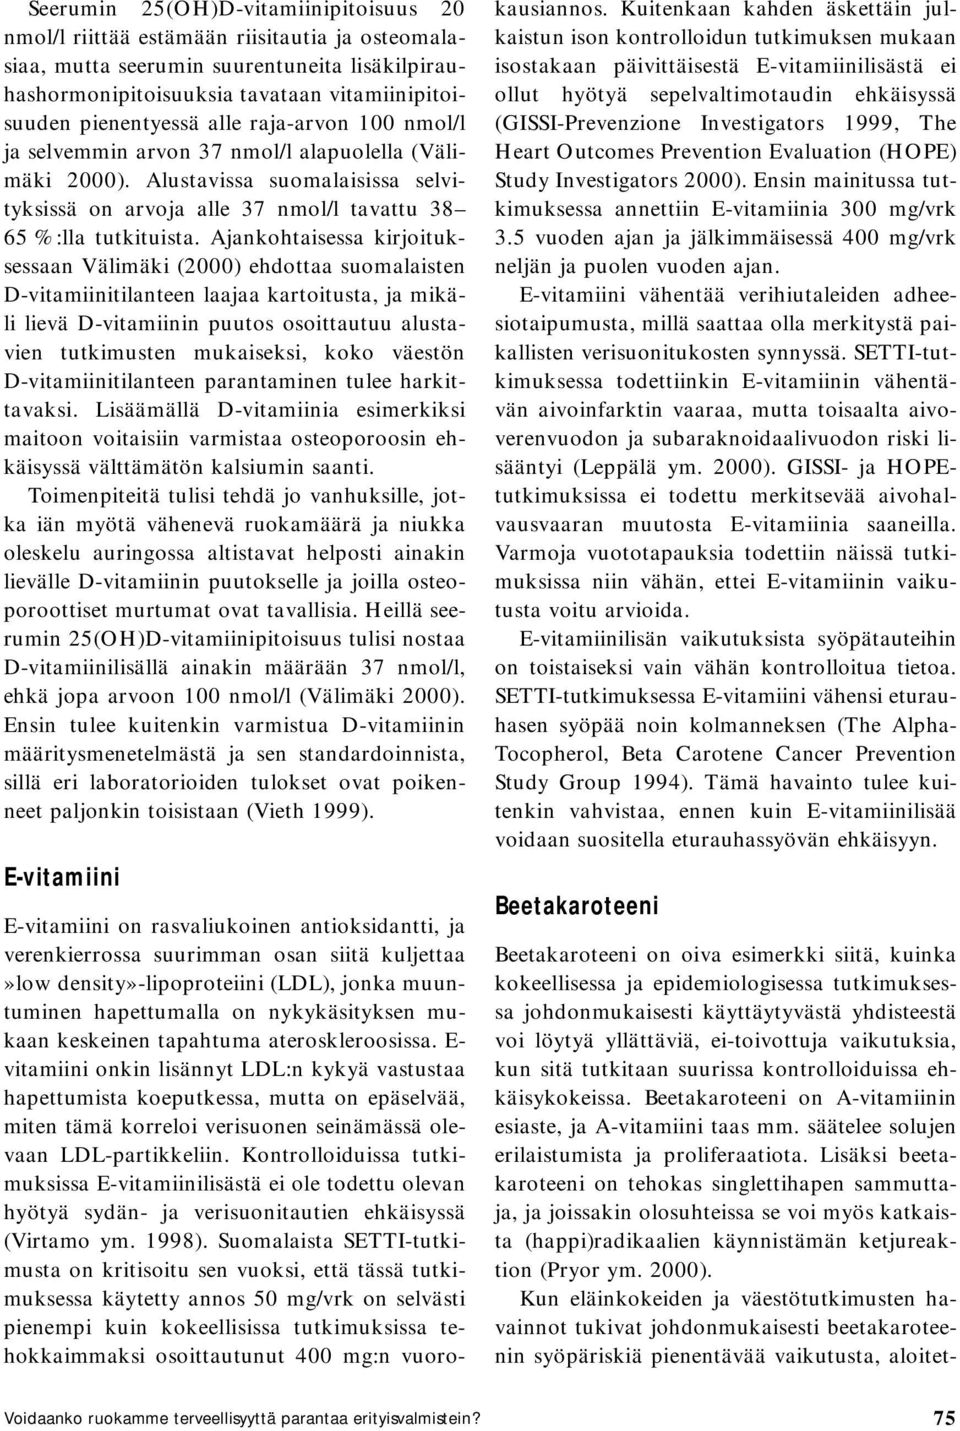 Ajankohtaisessa kirjoituksessaan Välimäki (2000) ehdottaa suomalaisten D-vitamiinitilanteen laajaa kartoitusta, ja mikäli lievä D-vitamiinin puutos osoittautuu alustavien tutkimusten mukaiseksi, koko